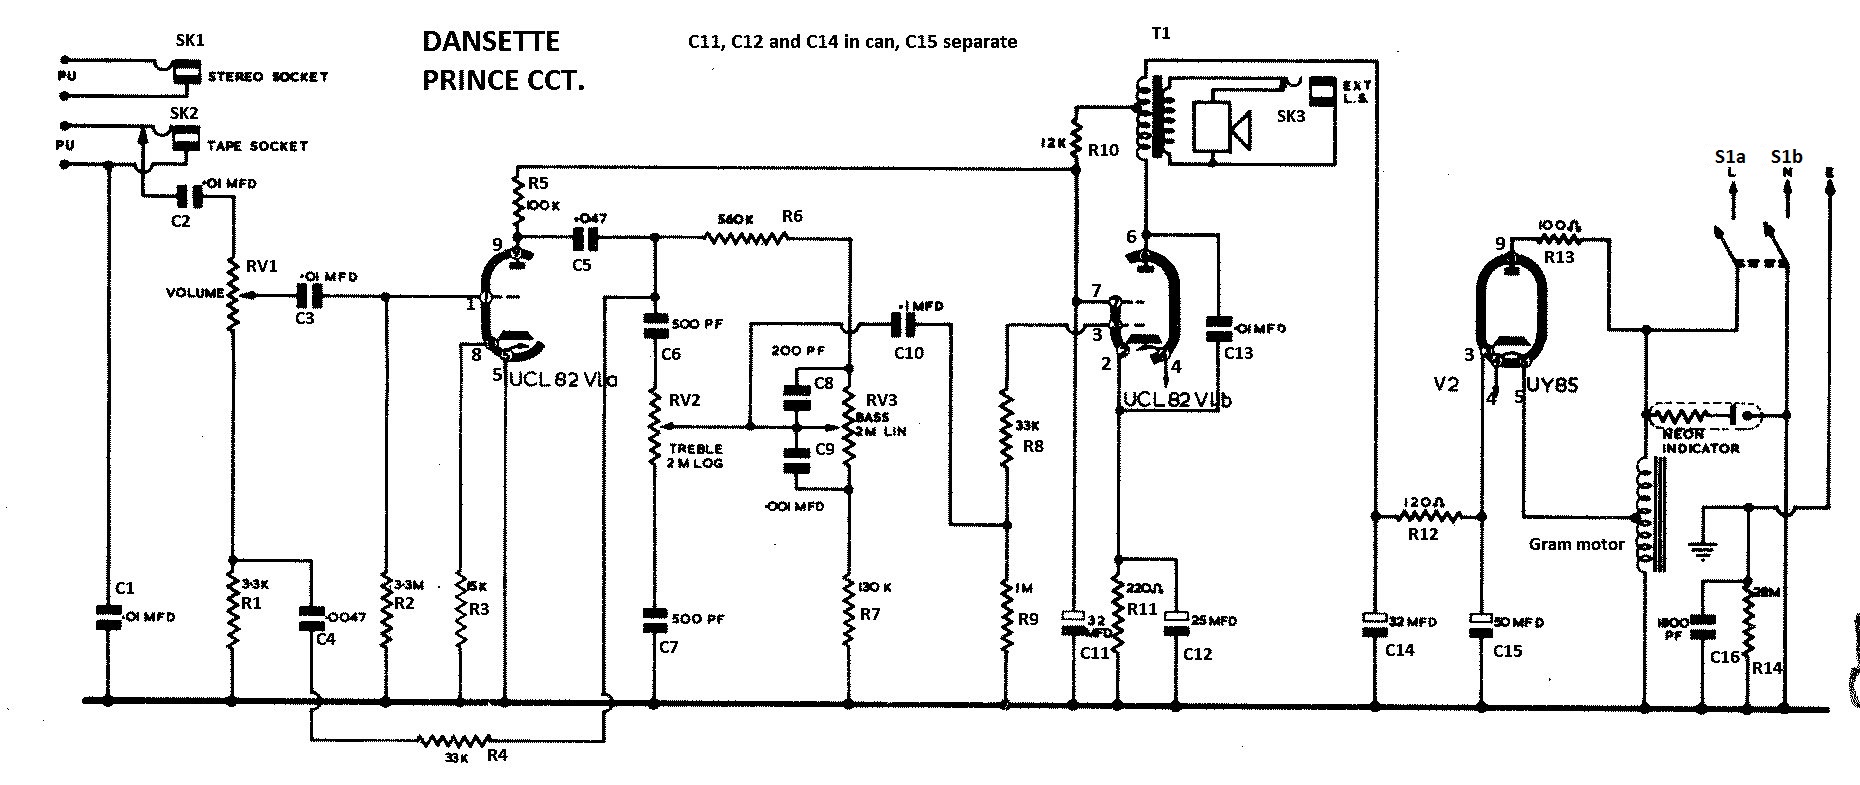 Manuals D - Radio WorkshopRadio Workshop light circuit wiring diagram uk 